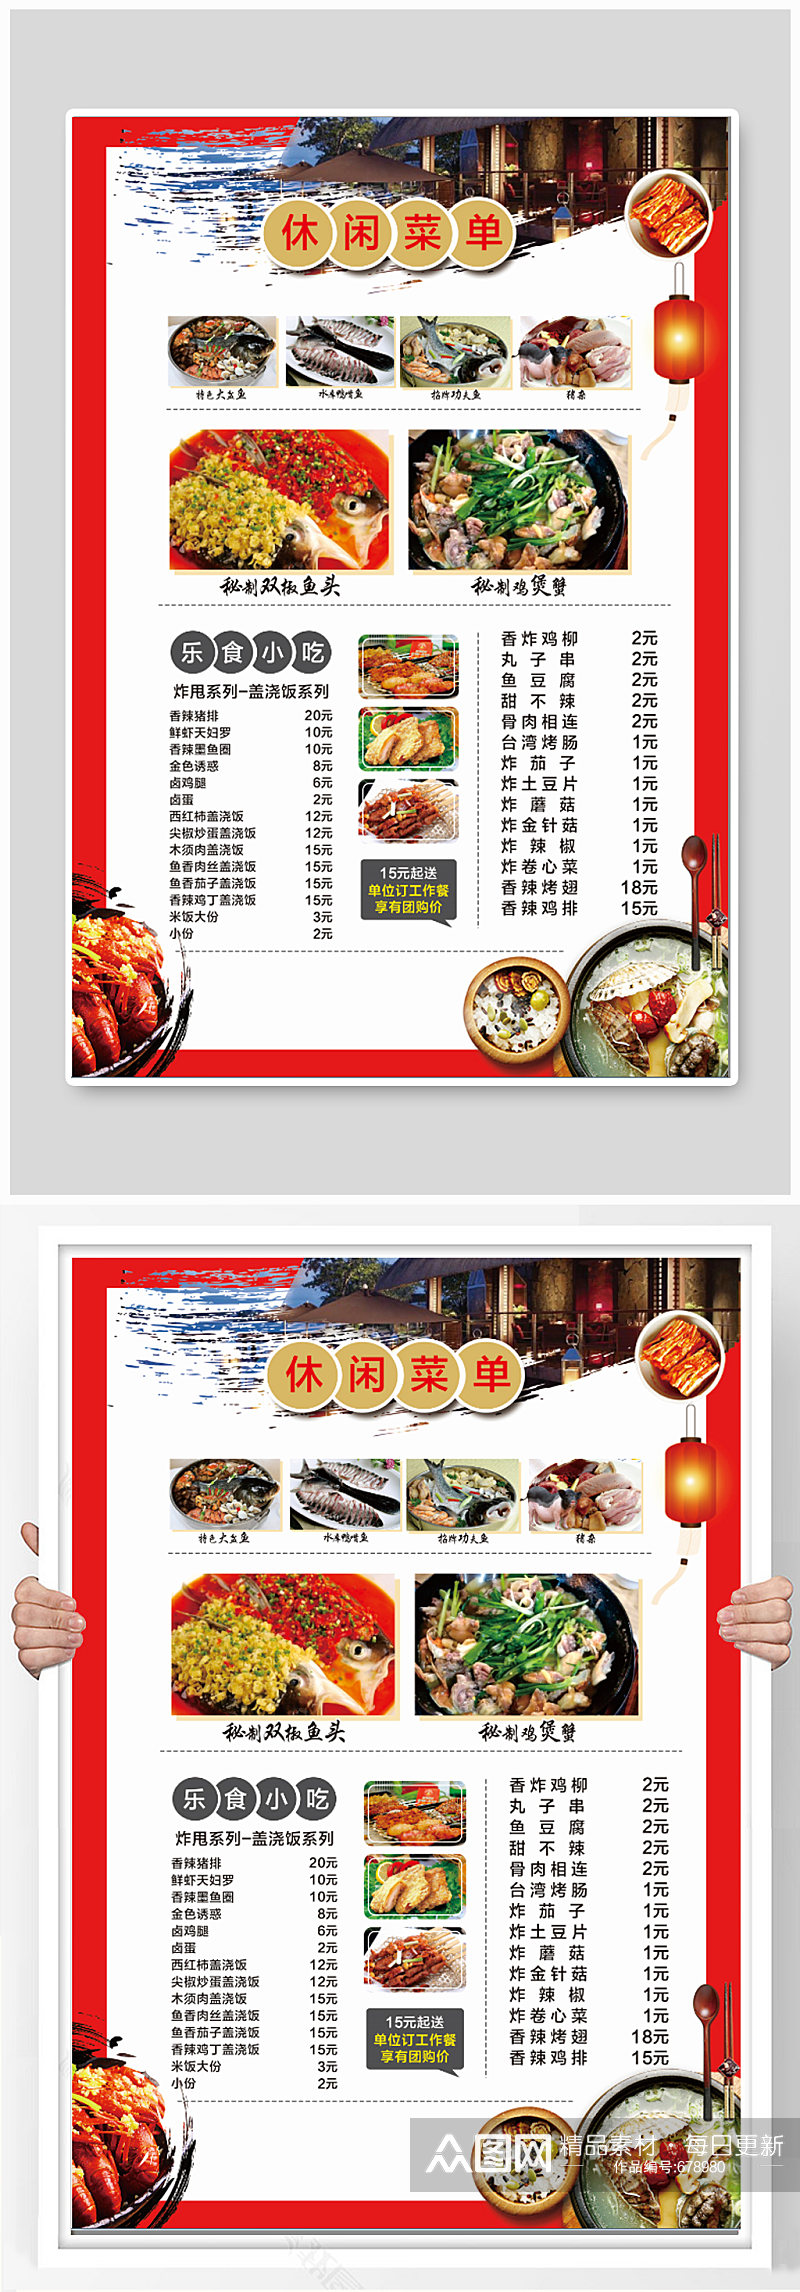 中国餐饮中餐中国菜单素材